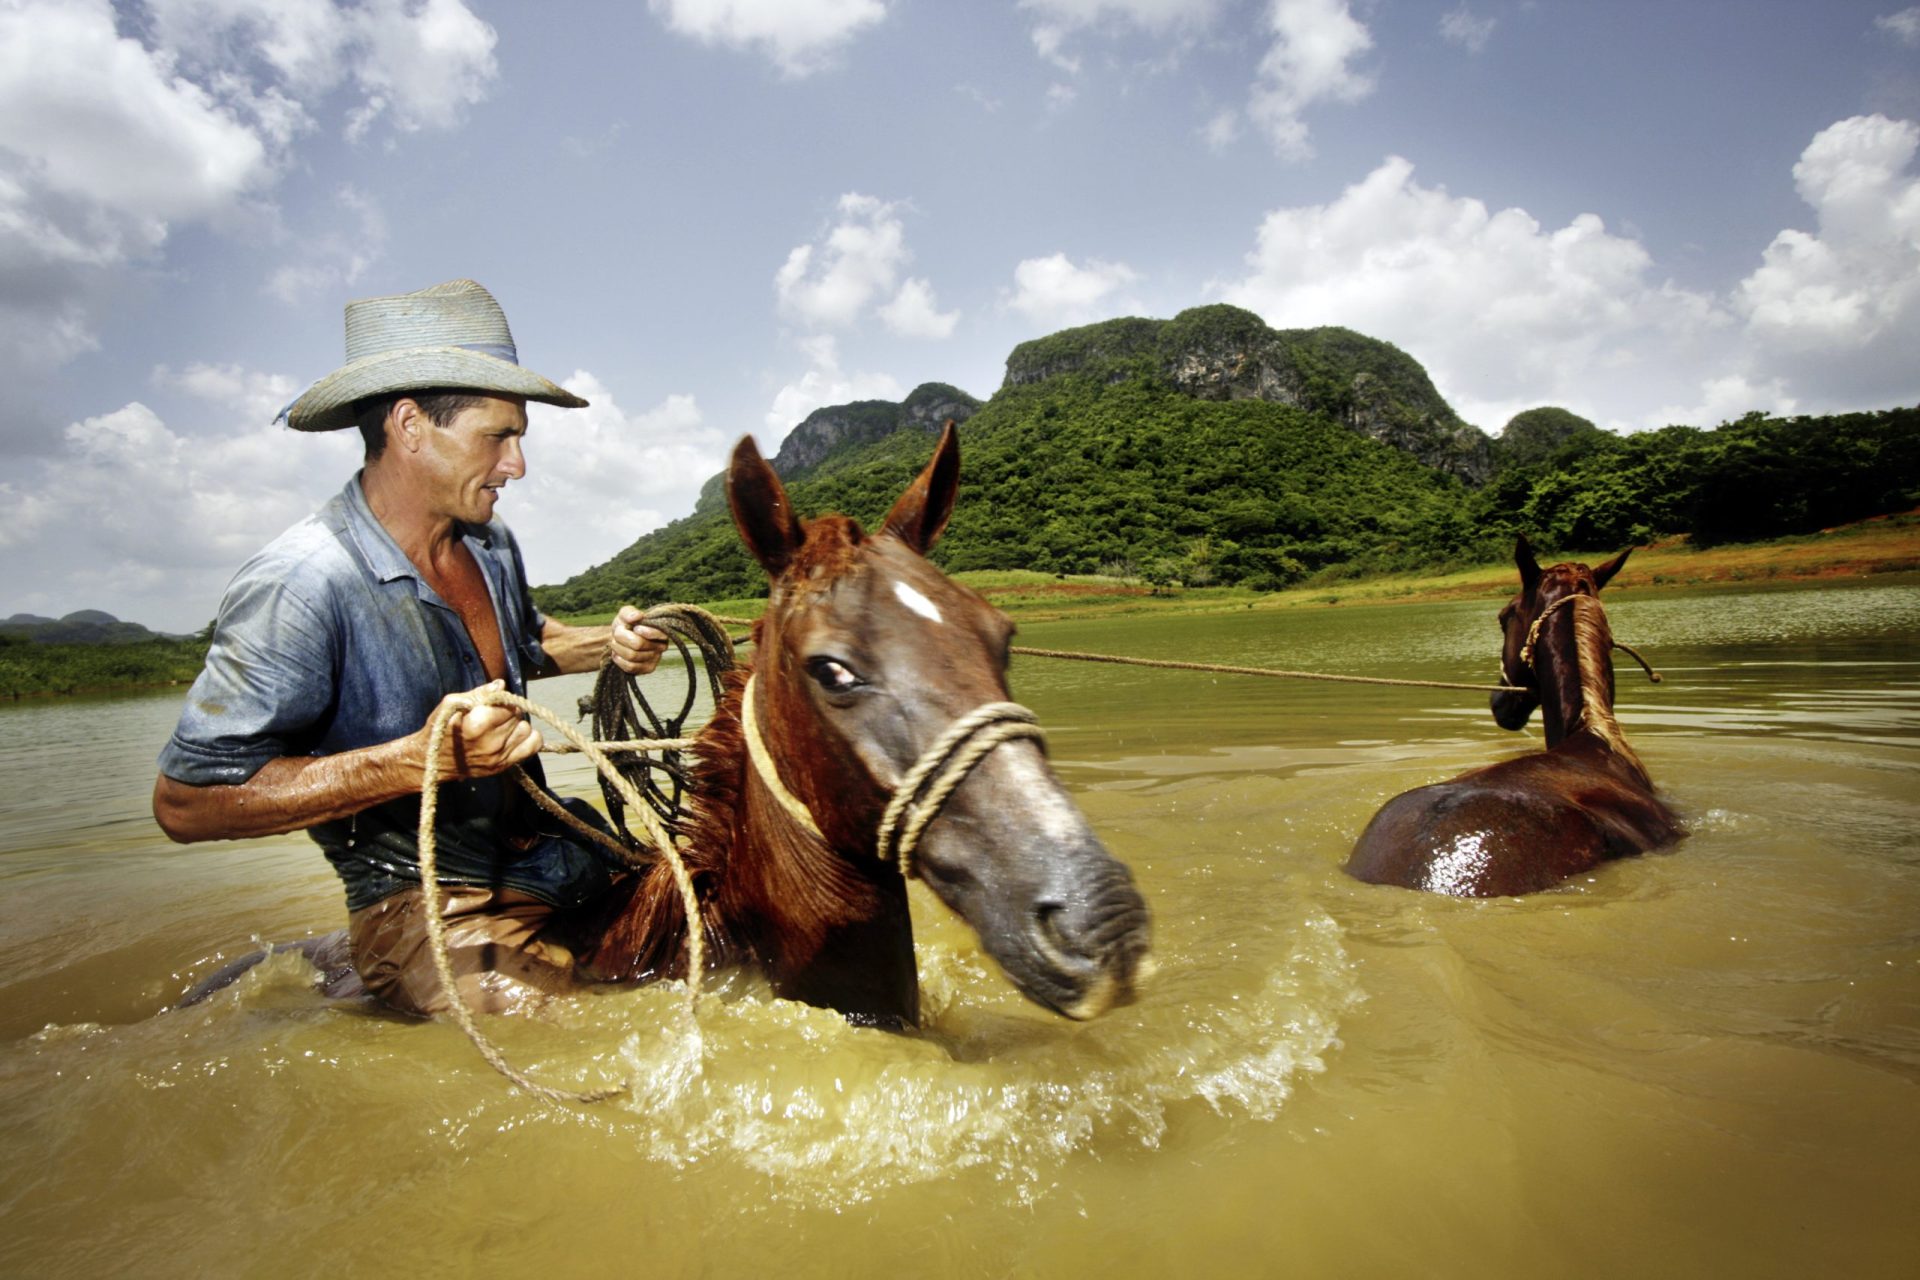 "El Norte", Cowboy und Farmer der Familienfinca Nuñez, mit zwei Pferden zur Abkühlung im See. Valle de Vinales, Provinz Pinar del Rio| Bildquelle: © Sven Creutzmann | Bilder sind in der Regel urheberrechtlich geschützt